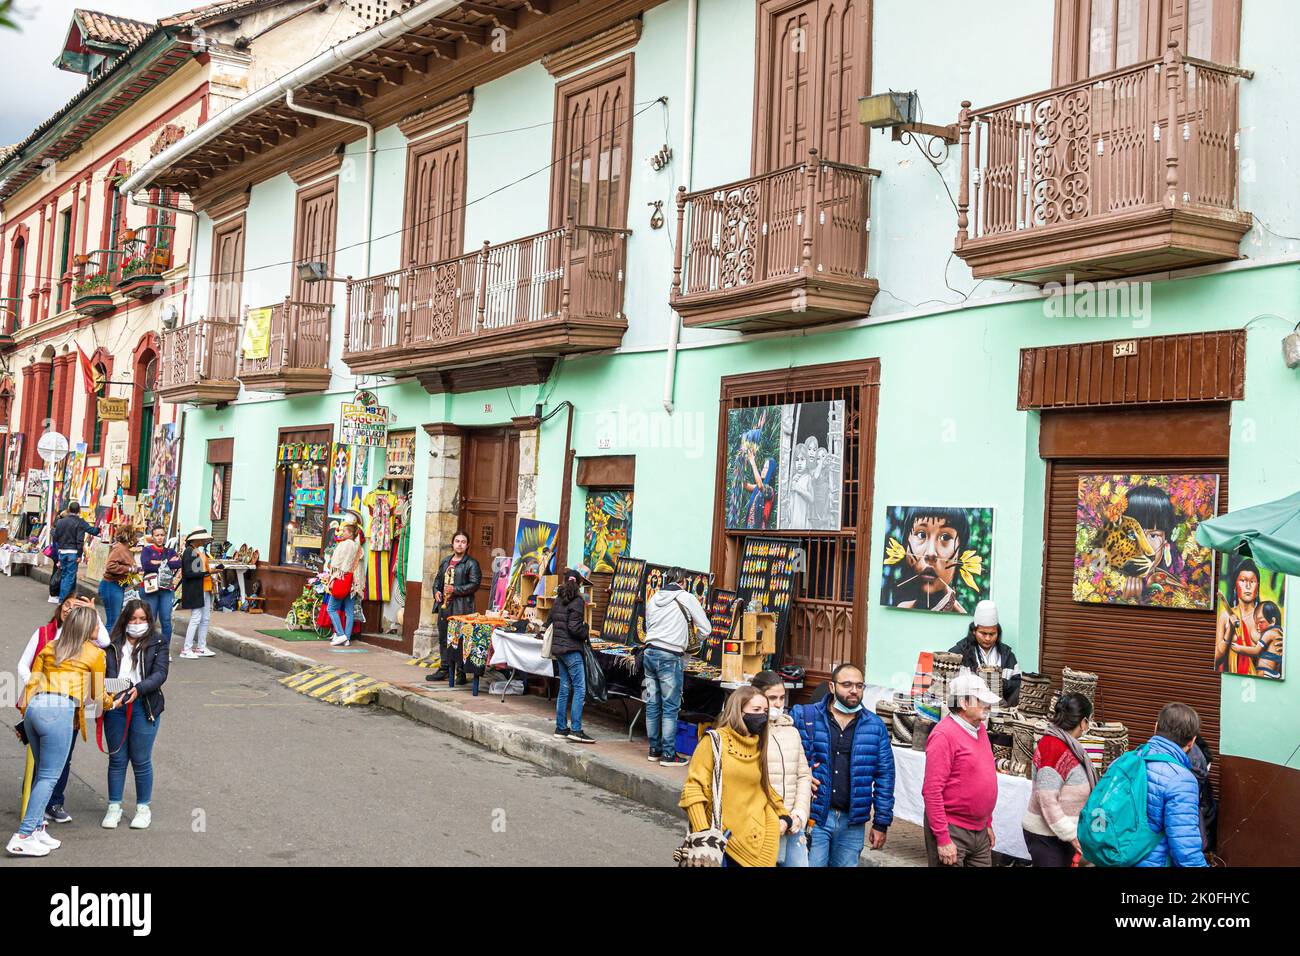 Bogotá Colombia, La Candelaria Centro Histórico centro histórico centro de la ciudad vieja calle 11, tiendas negocios negocios tiendas mercado mar Foto de stock